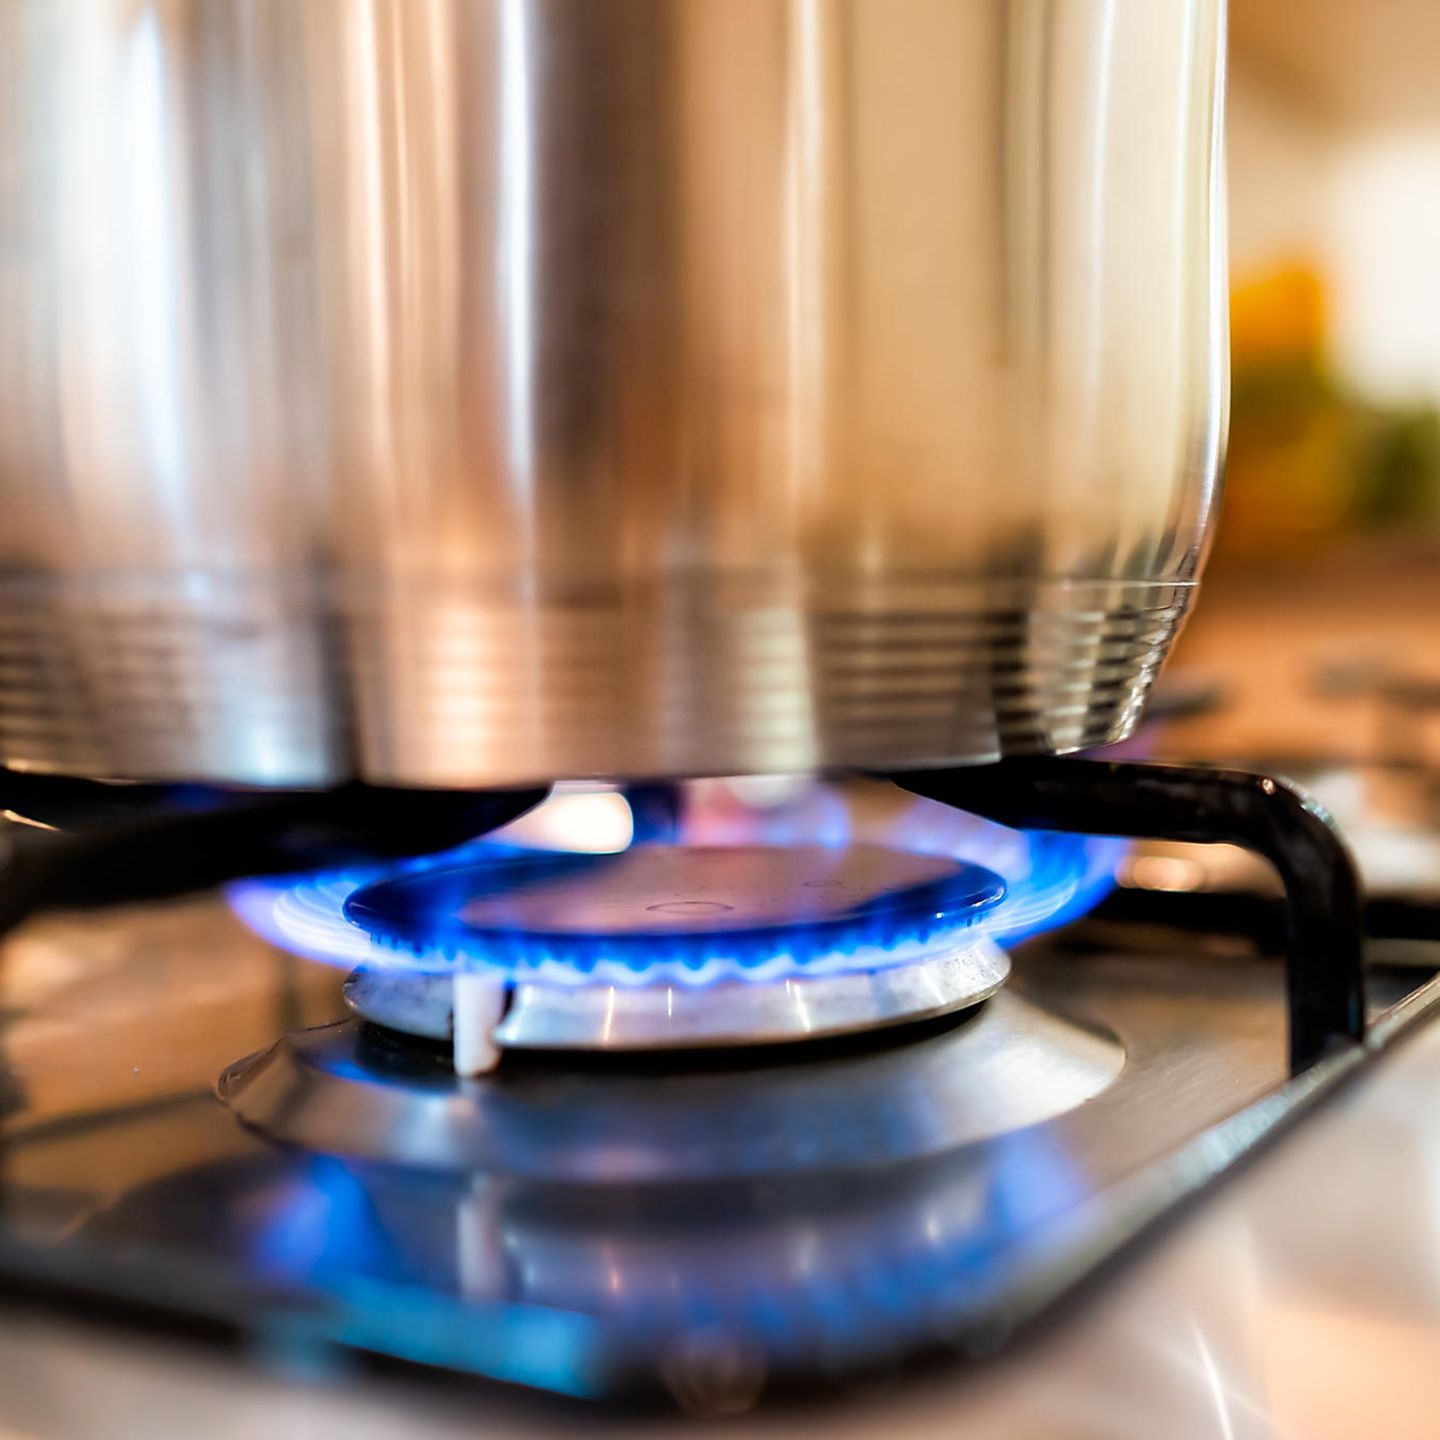 Gas sparen: Acht Tipps schonen Umwelt & Geldbeutel! - [GEO]